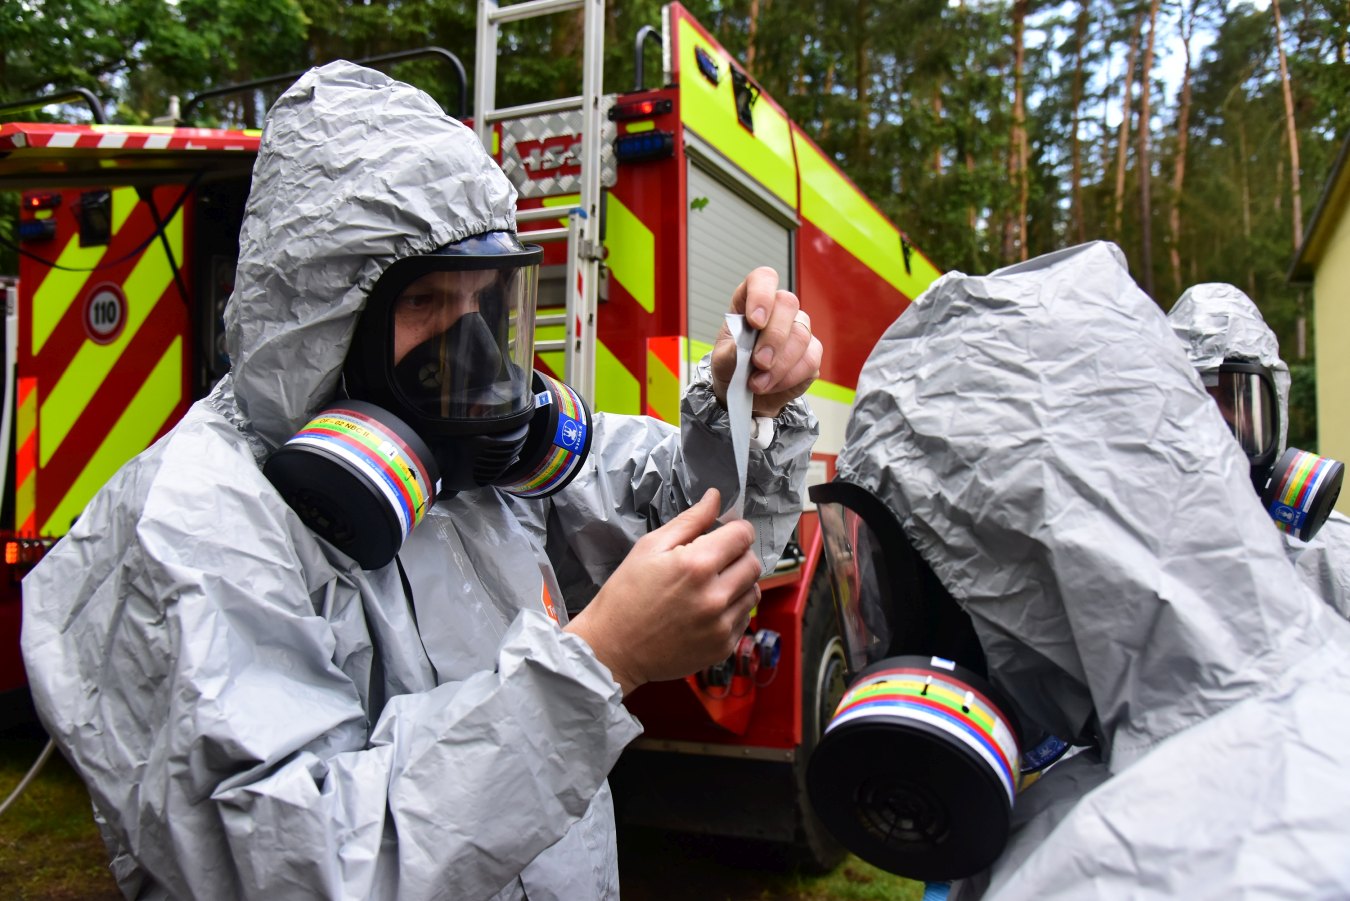 Historicky první výcvik hasičů v prostředí s reálnou kontaminací radioaktivními látkami